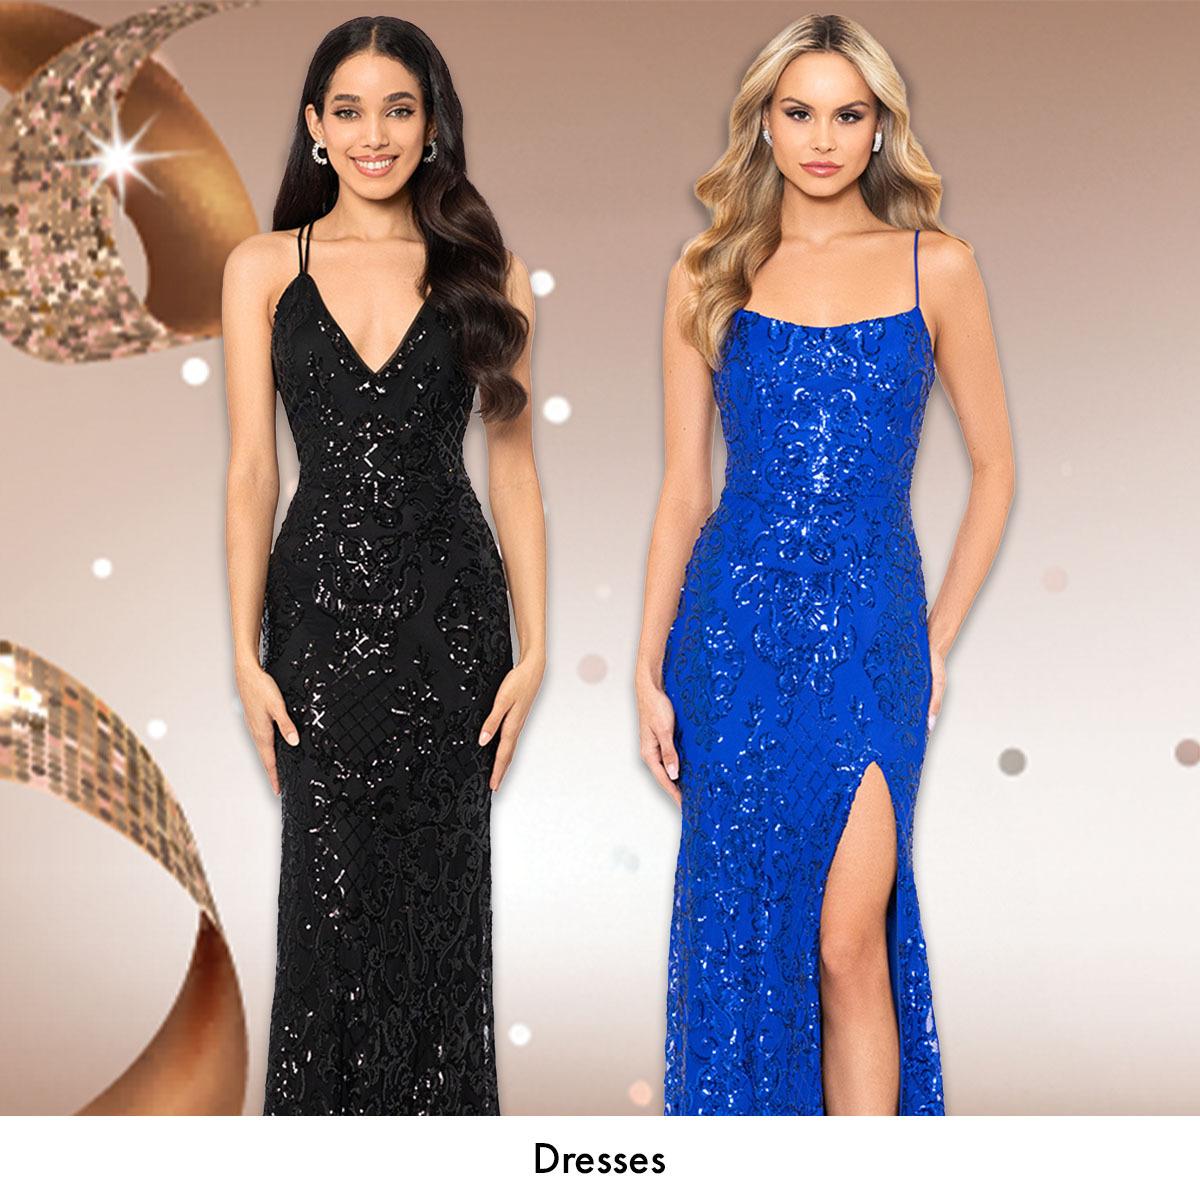 Shop Prom Dresses